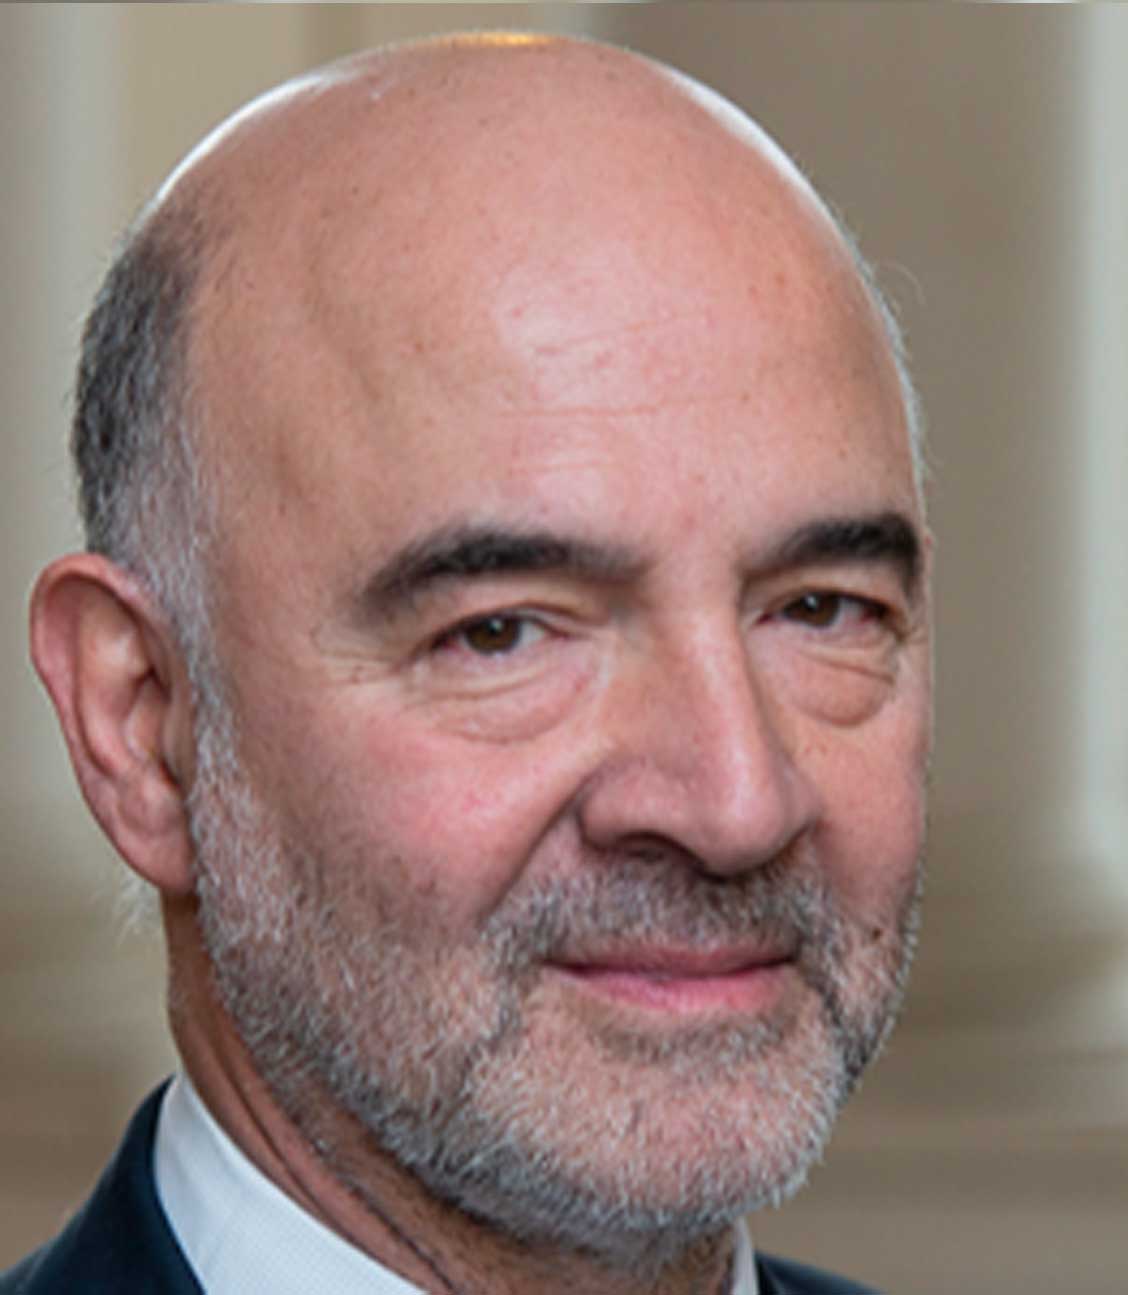 Fotografía oficial de Pierre Moscovici